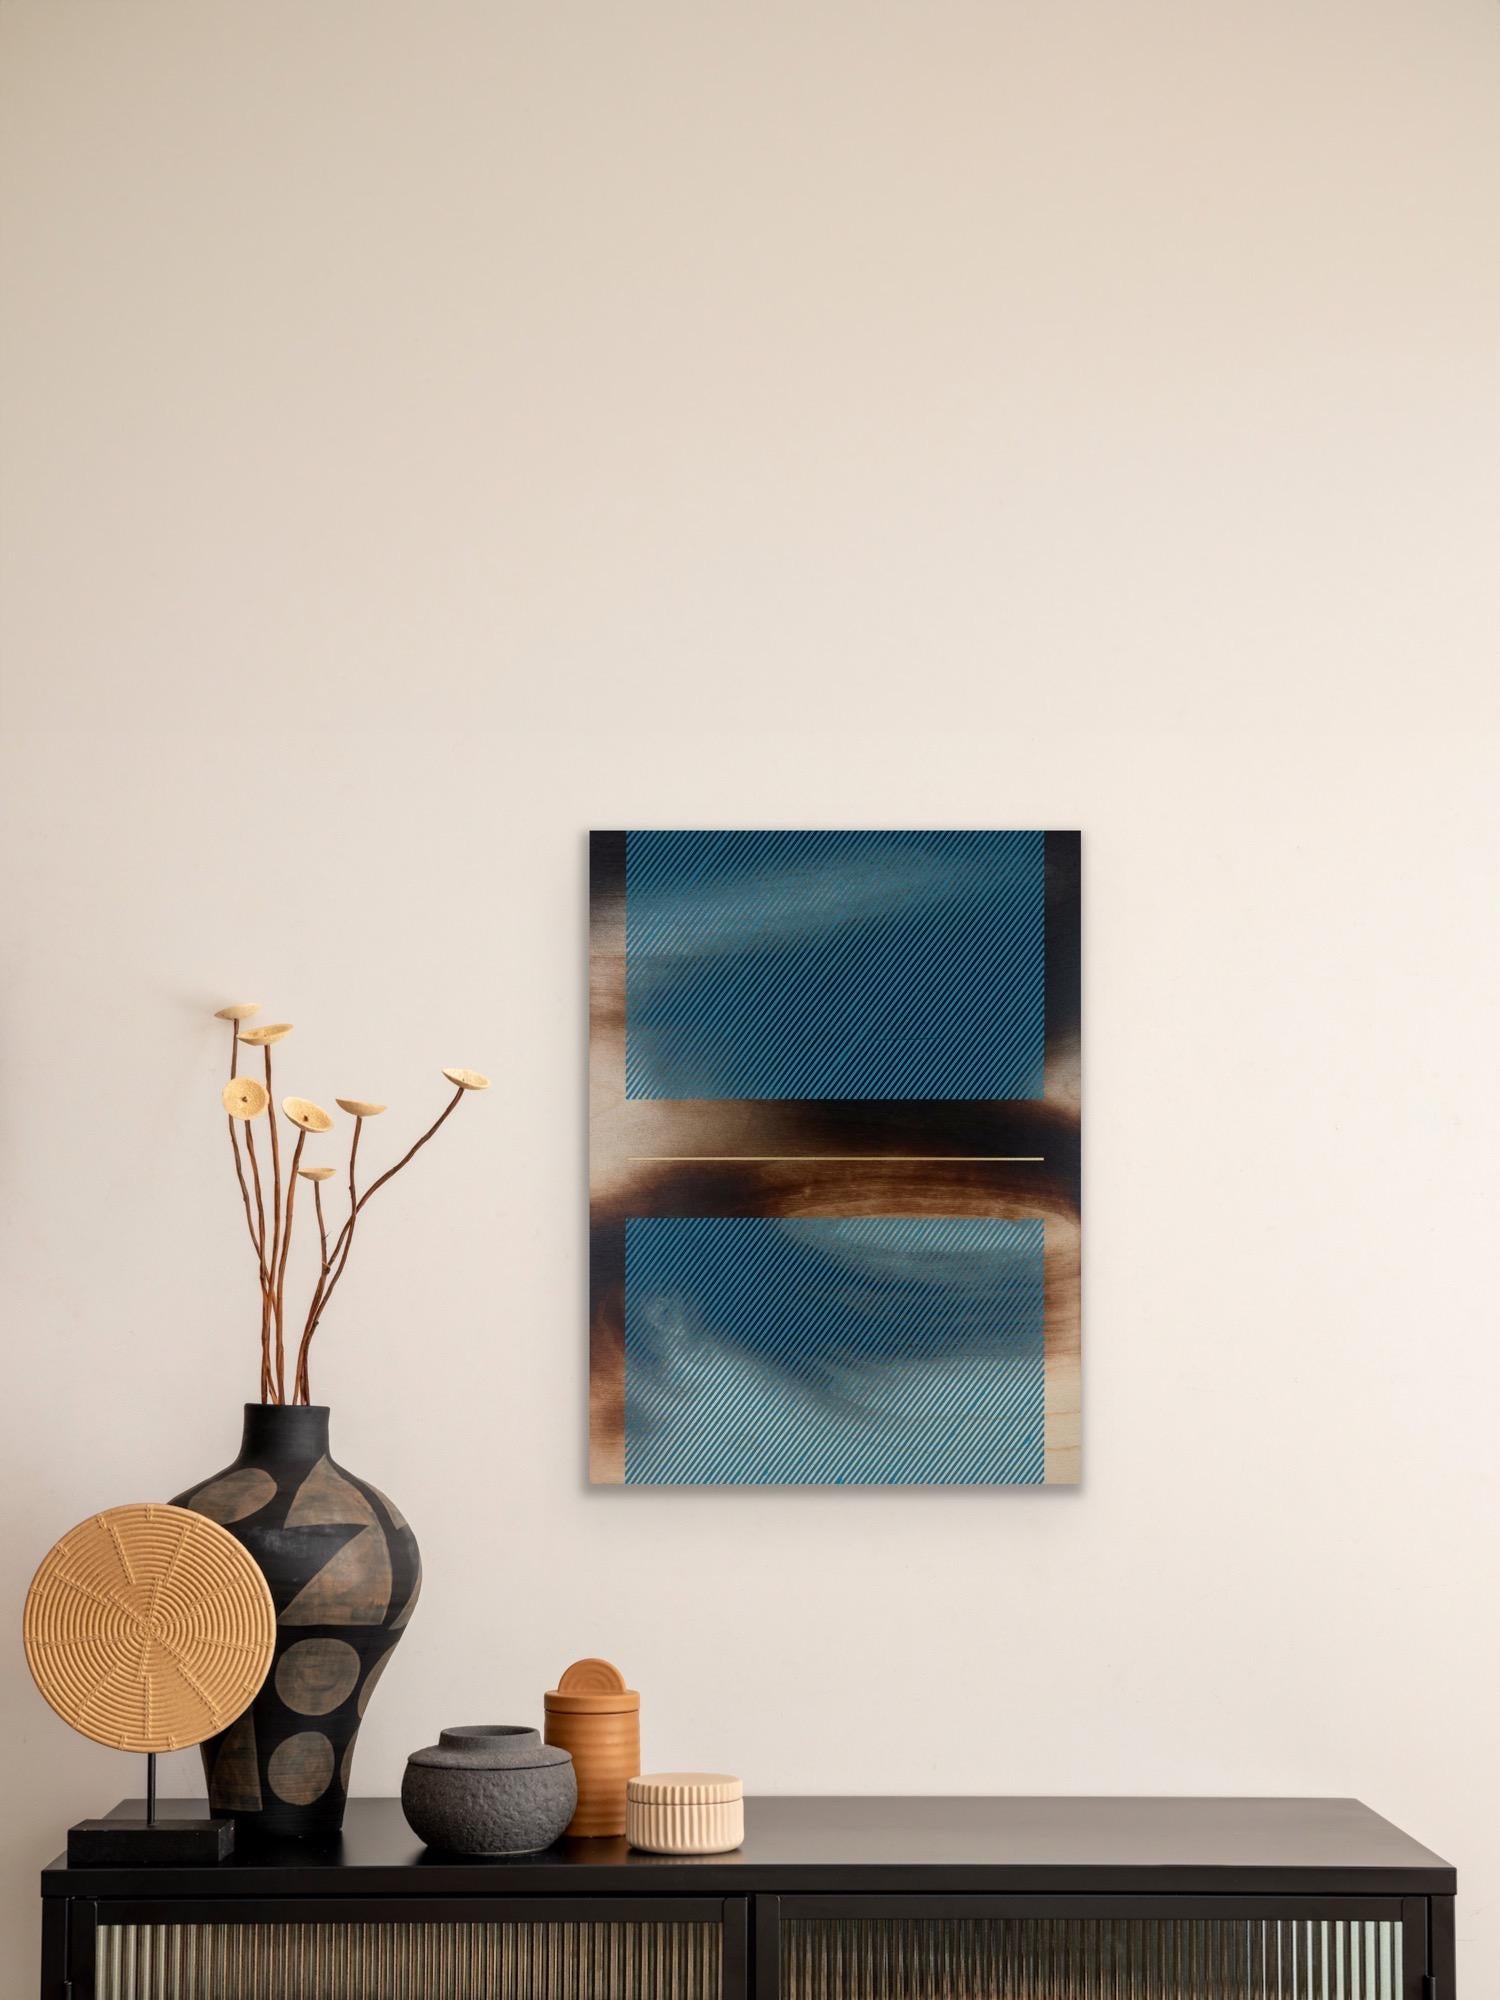 Mångata celestial teal (grid painting minimal wood hard-edge dopamine vibrant) For Sale 7